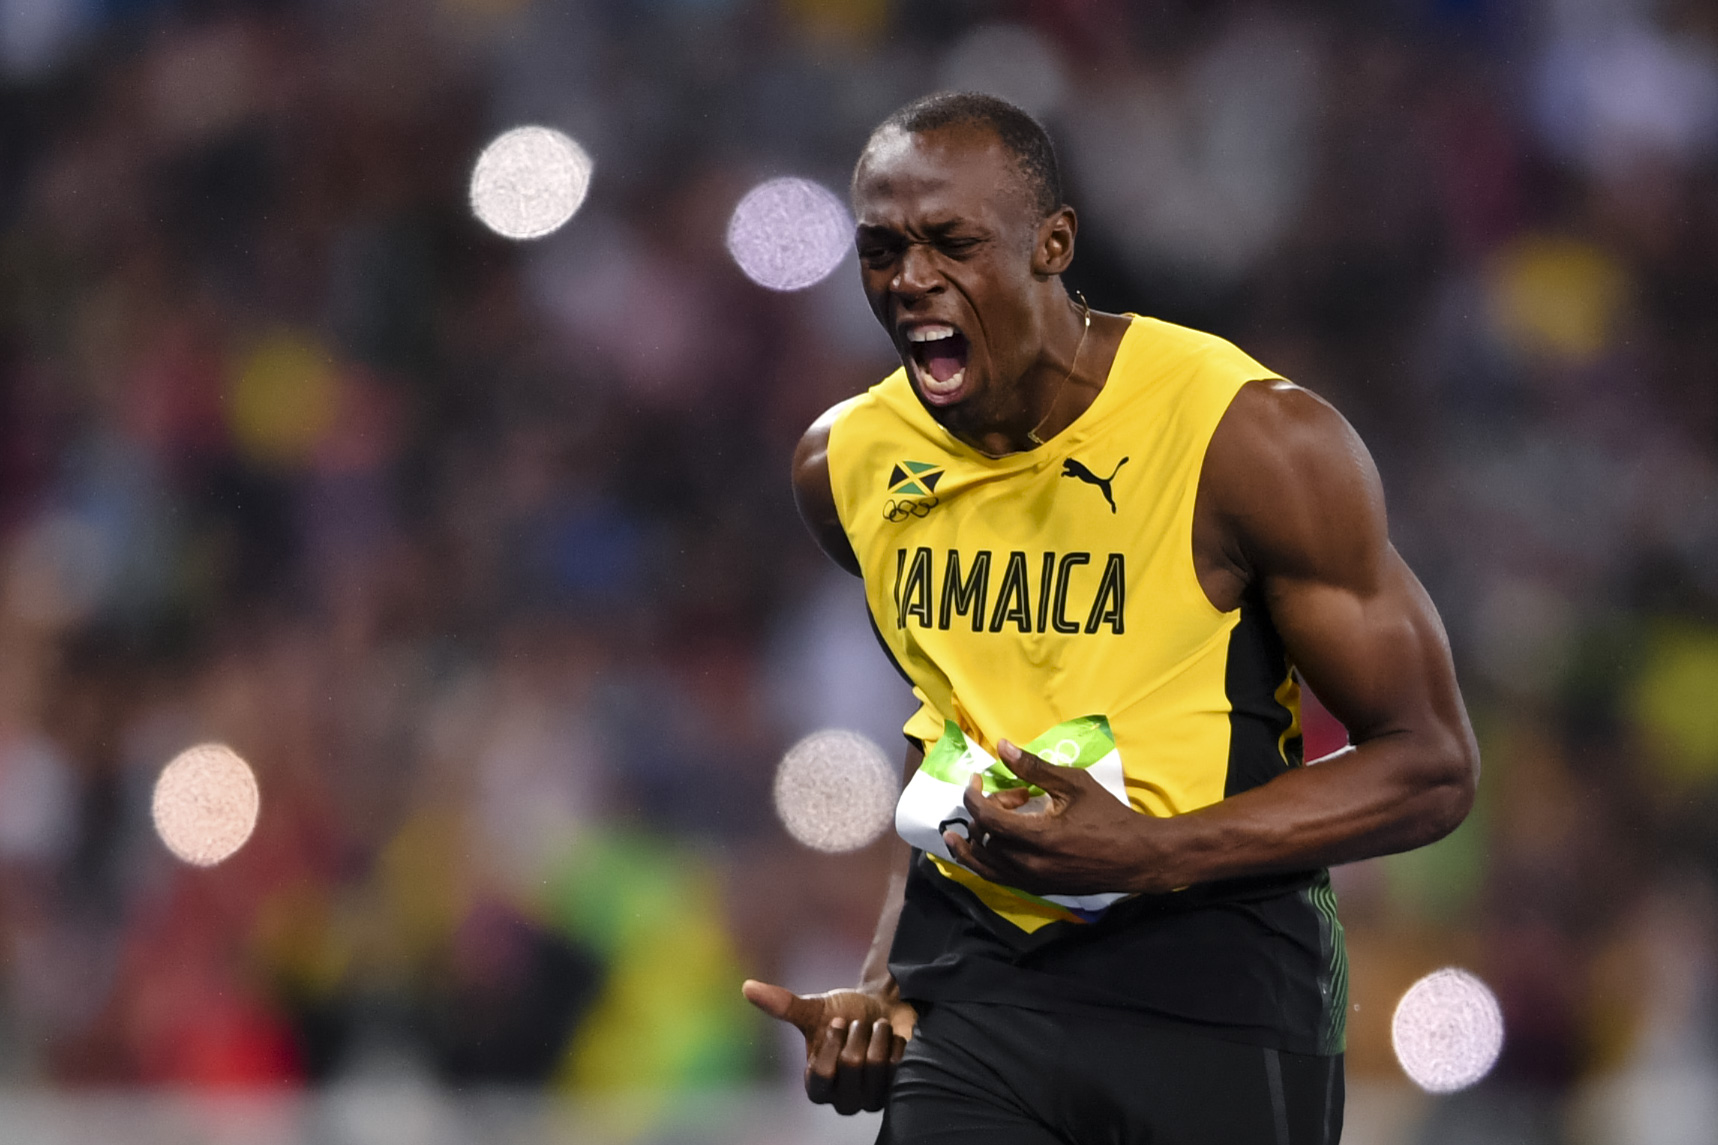 Det betyder att Bolt tagit hem två OS-guld i Rio. 